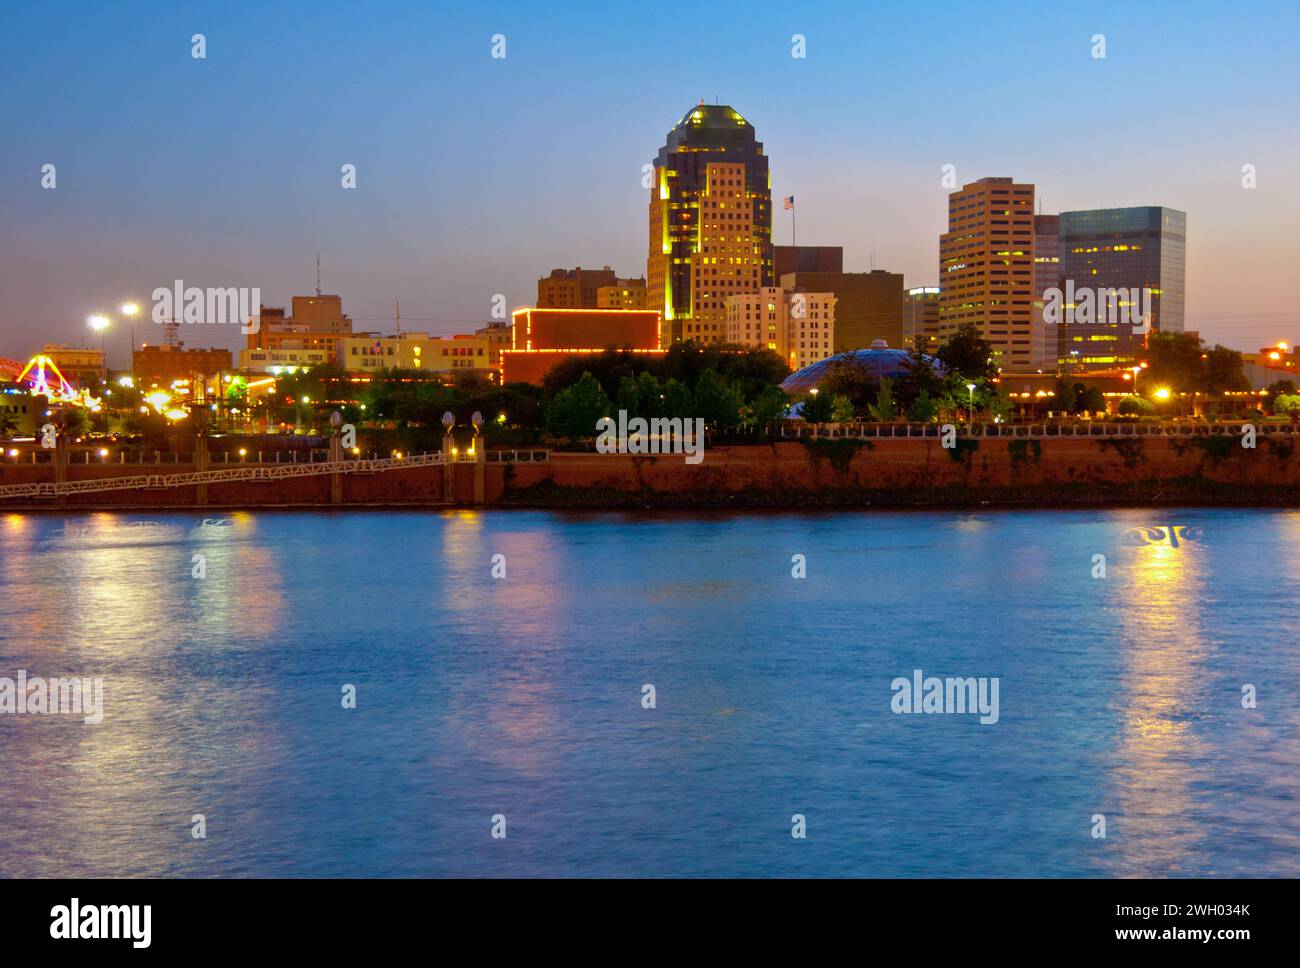 city skyline at night along the Red River - Shreveport, Louisiana Stock Photo